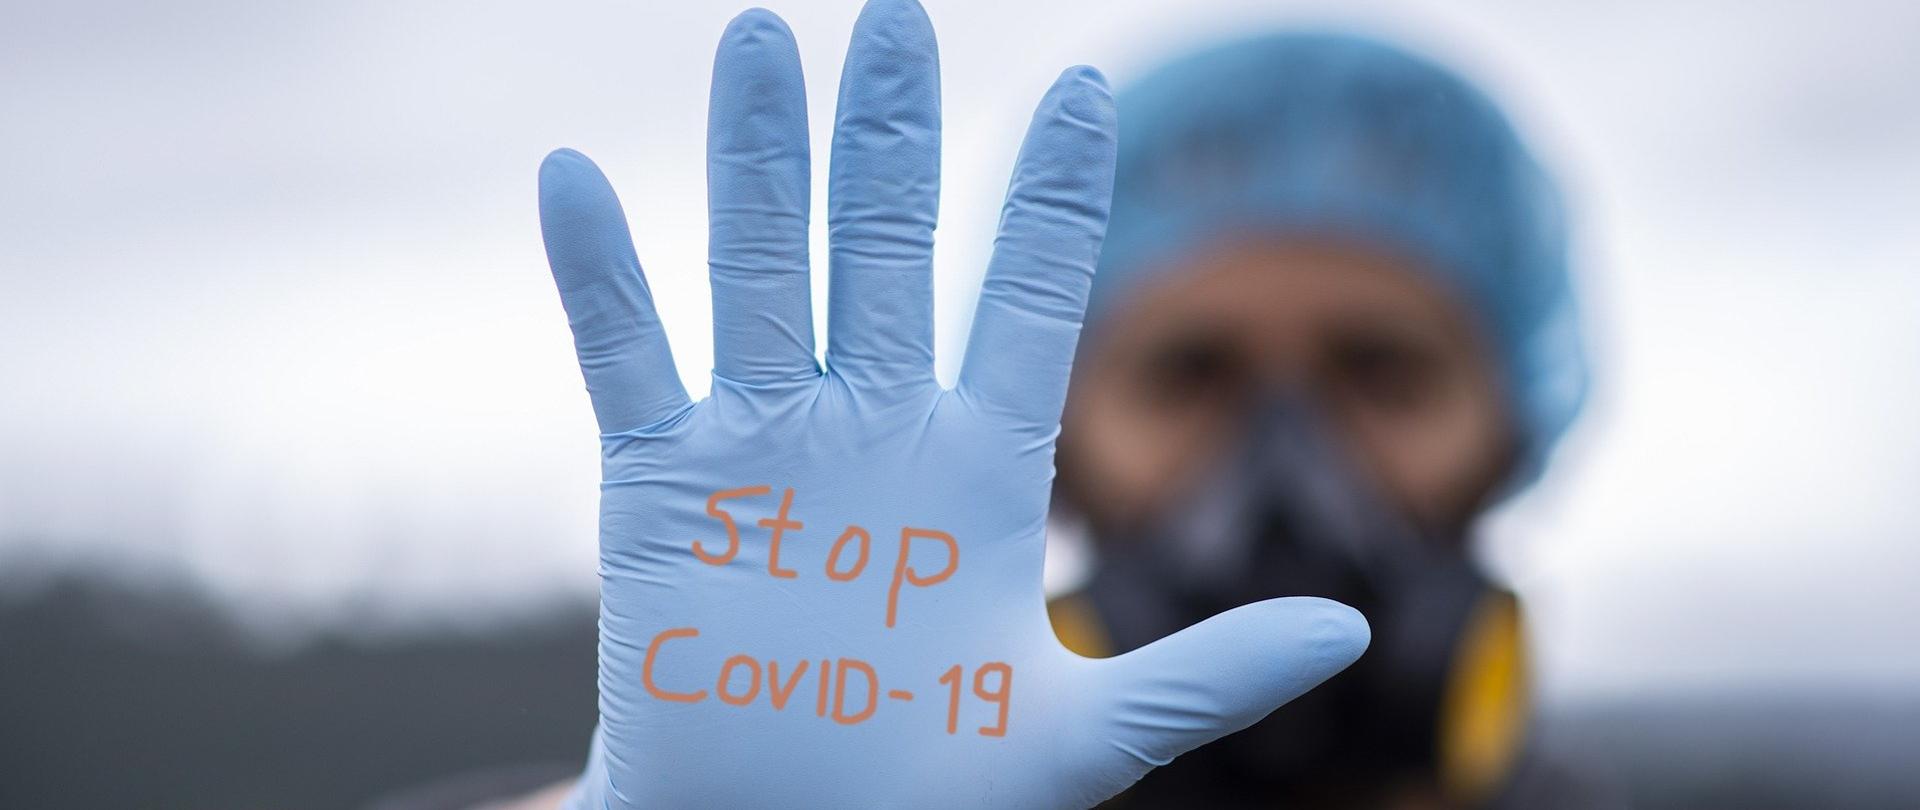 Na pierwszym planie ręka w jednorazowej rękawiczce, na której jest napisane Stop Covid-19, a którą wystawił człowiek stojący na drugim planie nieostry w maseczce i z czepkiem medycznym na głowie.